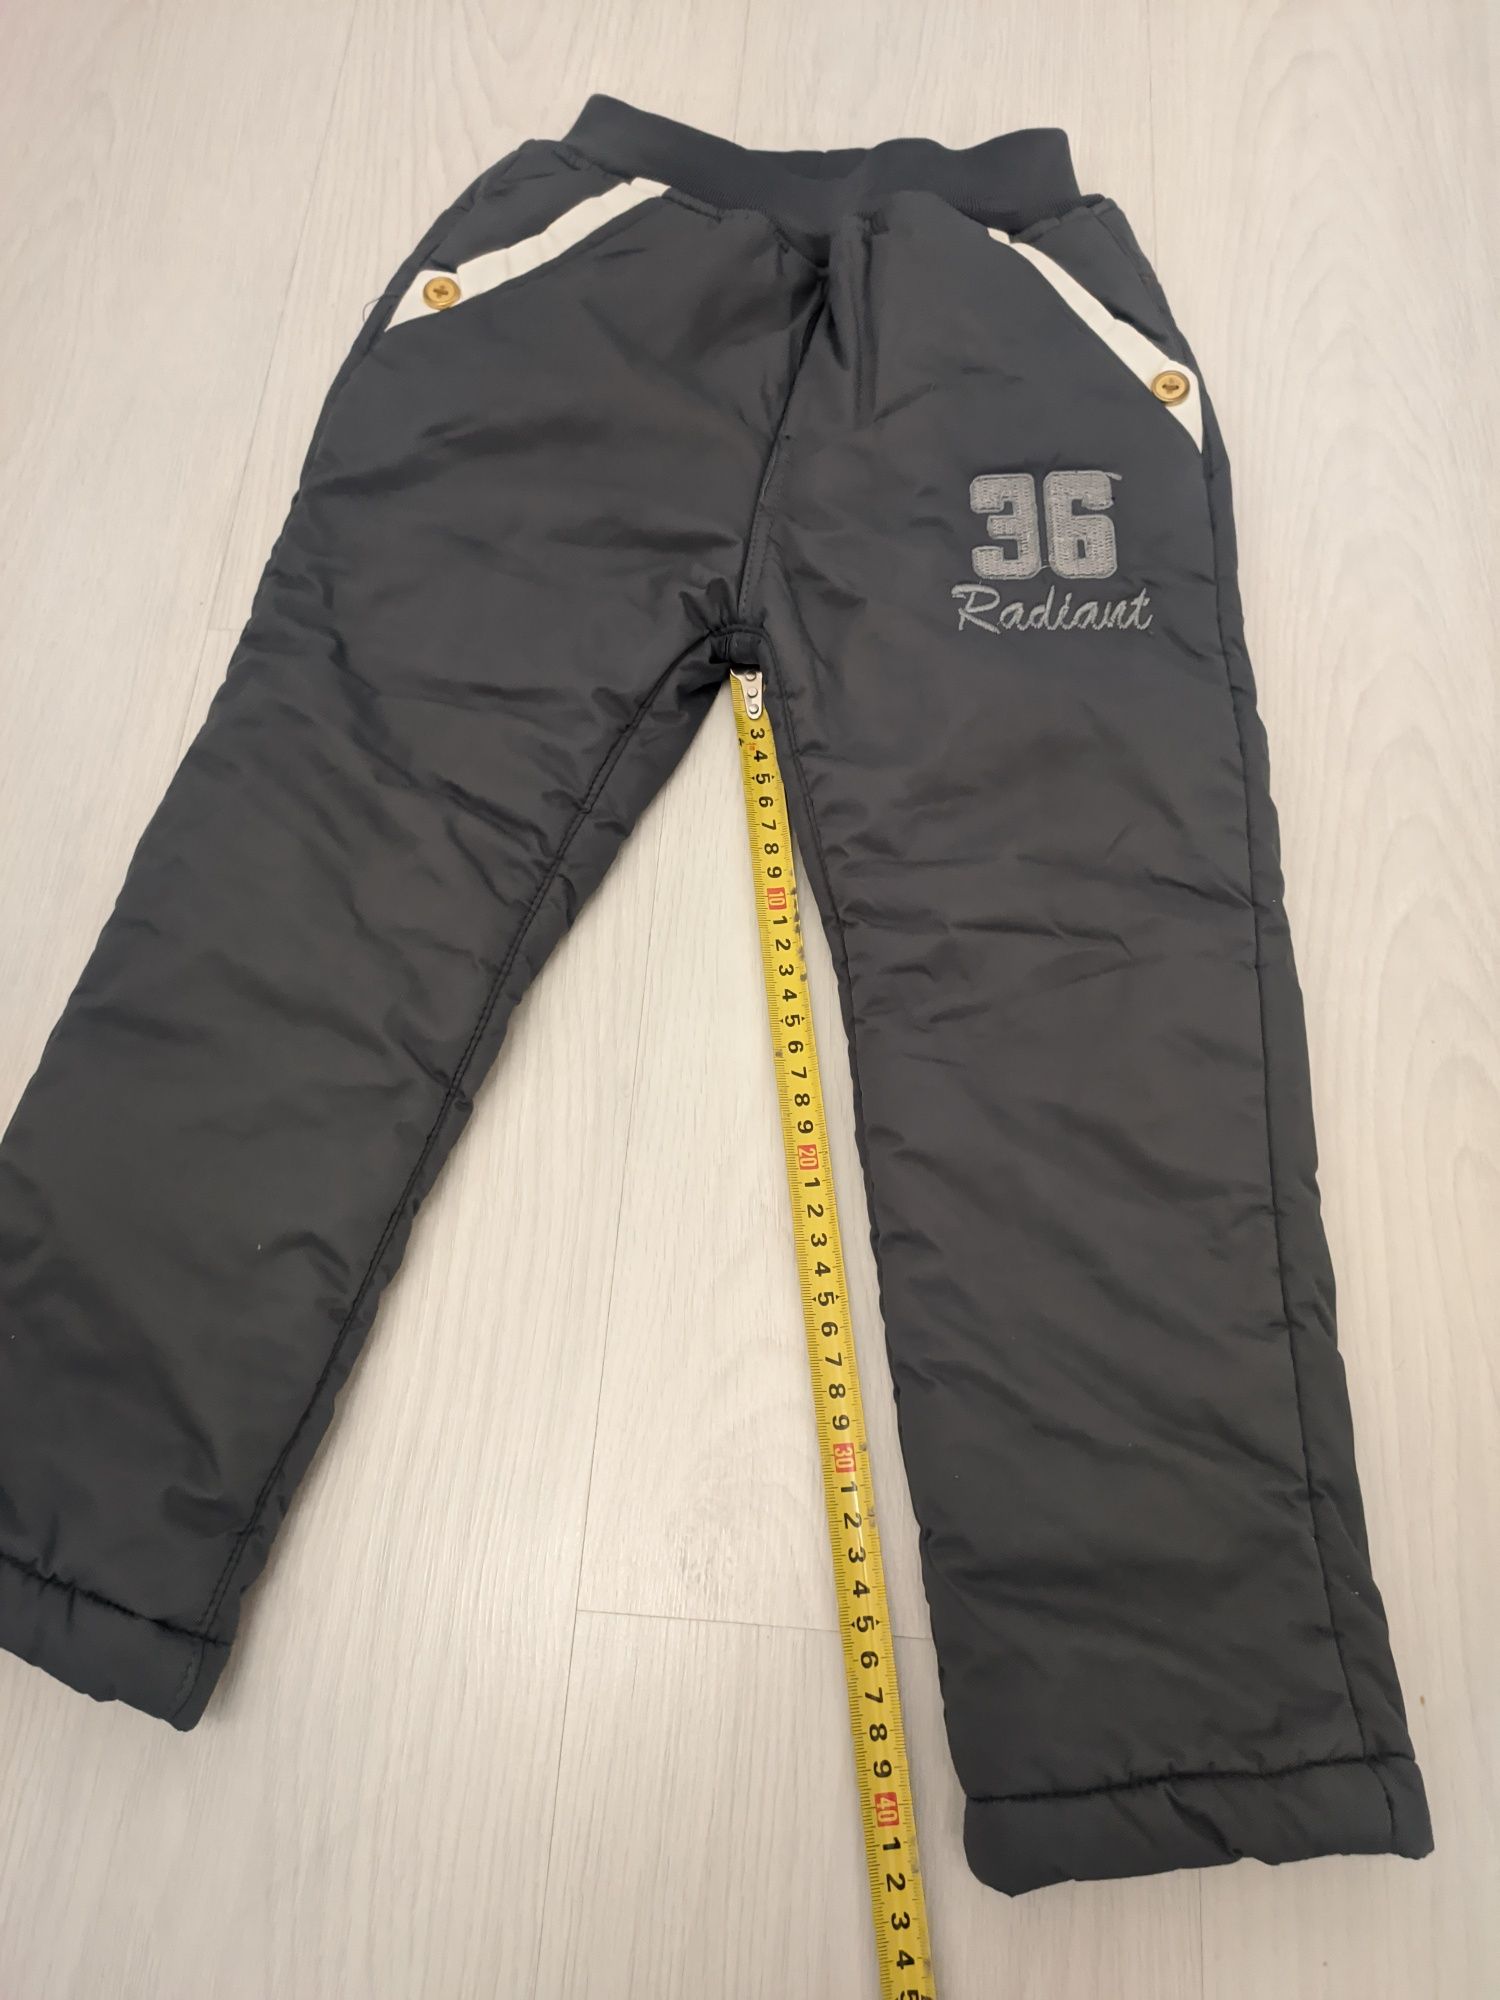 Zestaw zimowy szare spodnie ocieplane i rękawiczki narciarskie 110/116